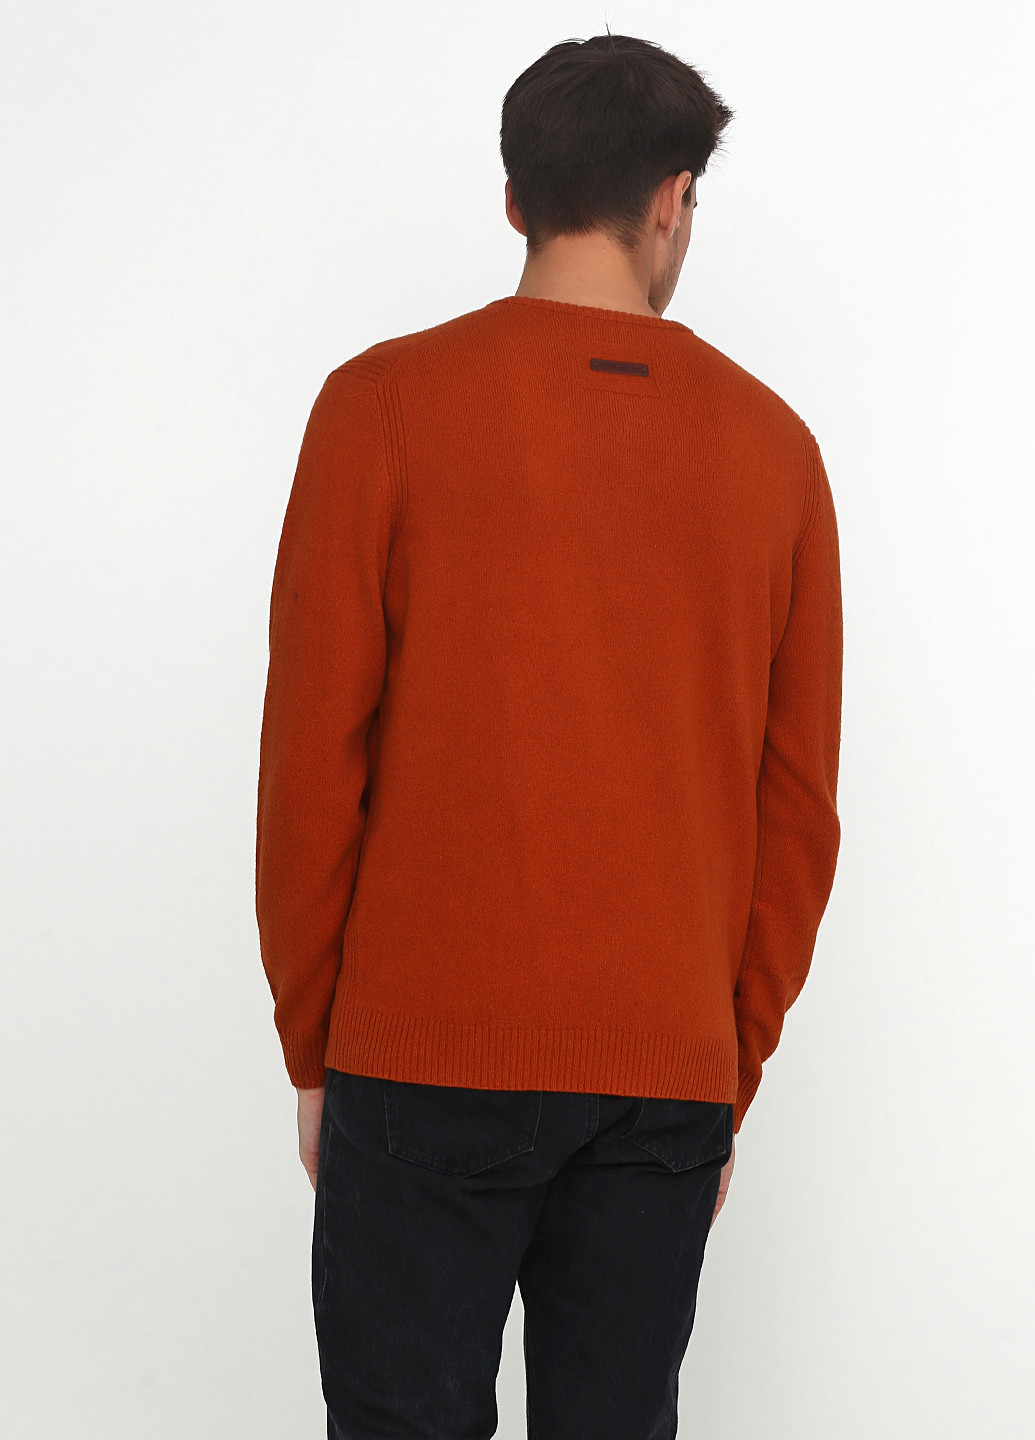 Терракотовый демисезонный пуловер пуловер Camel Active